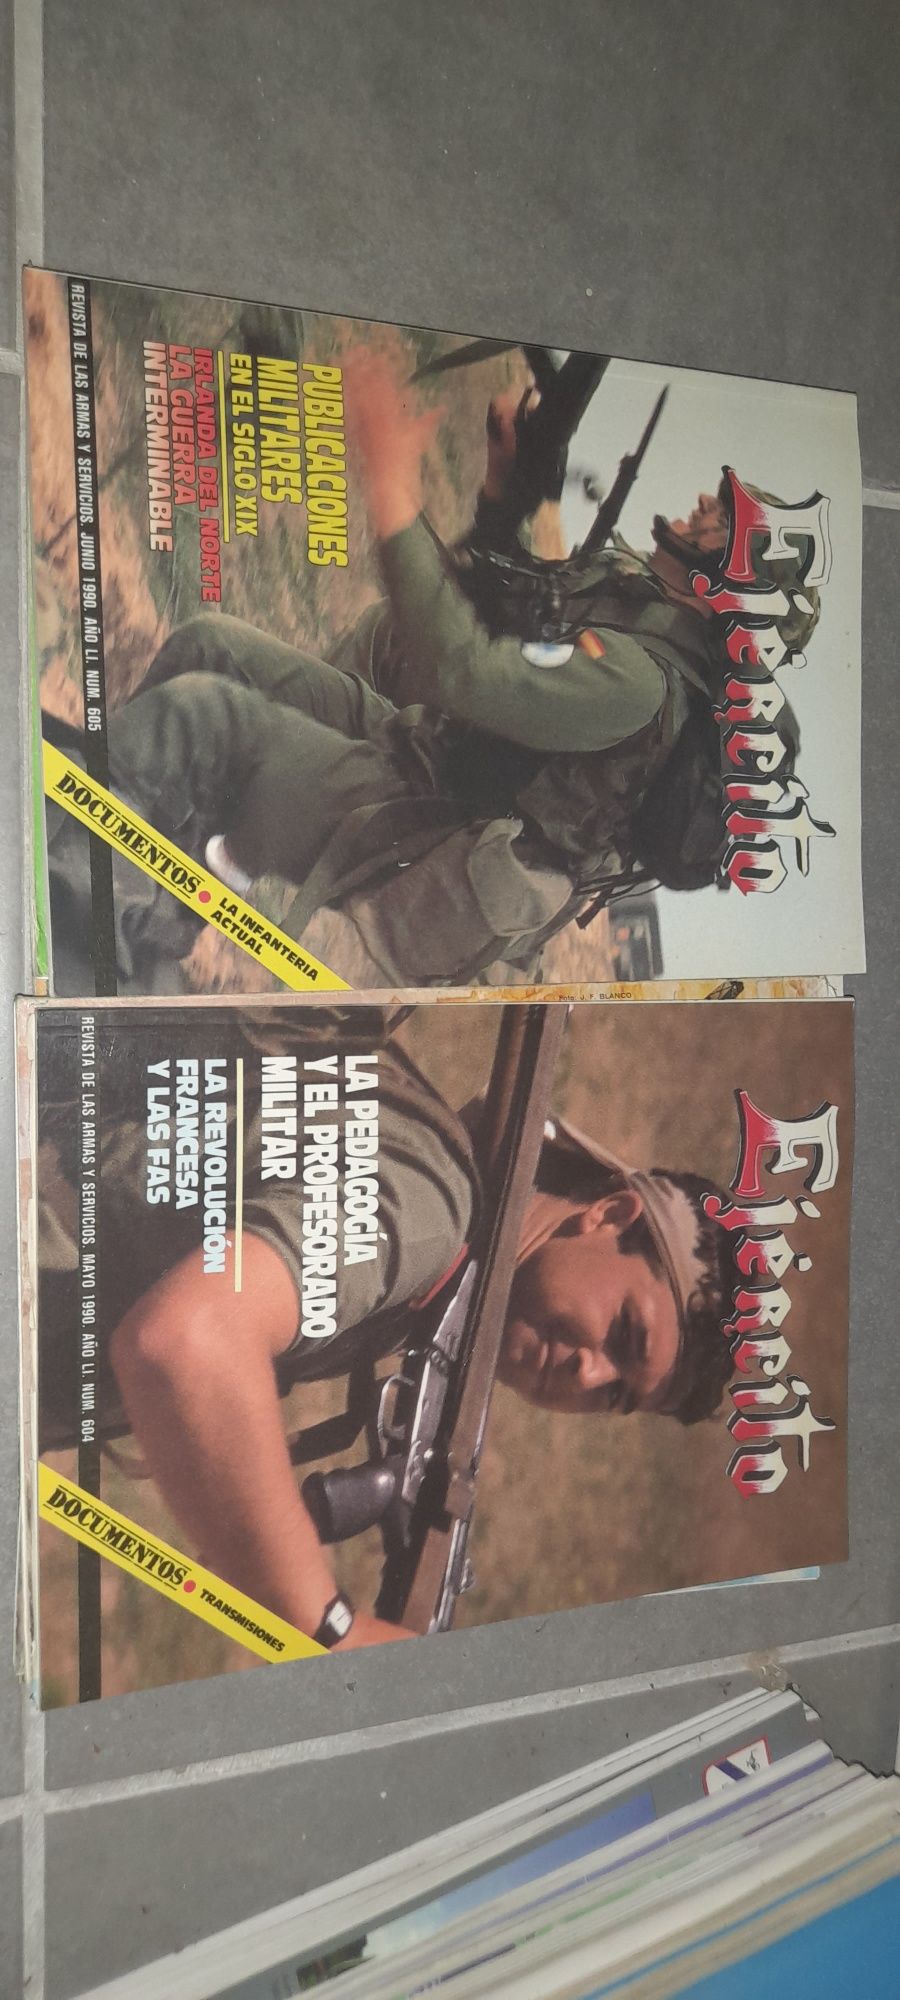 Revistas Exército Espanhol